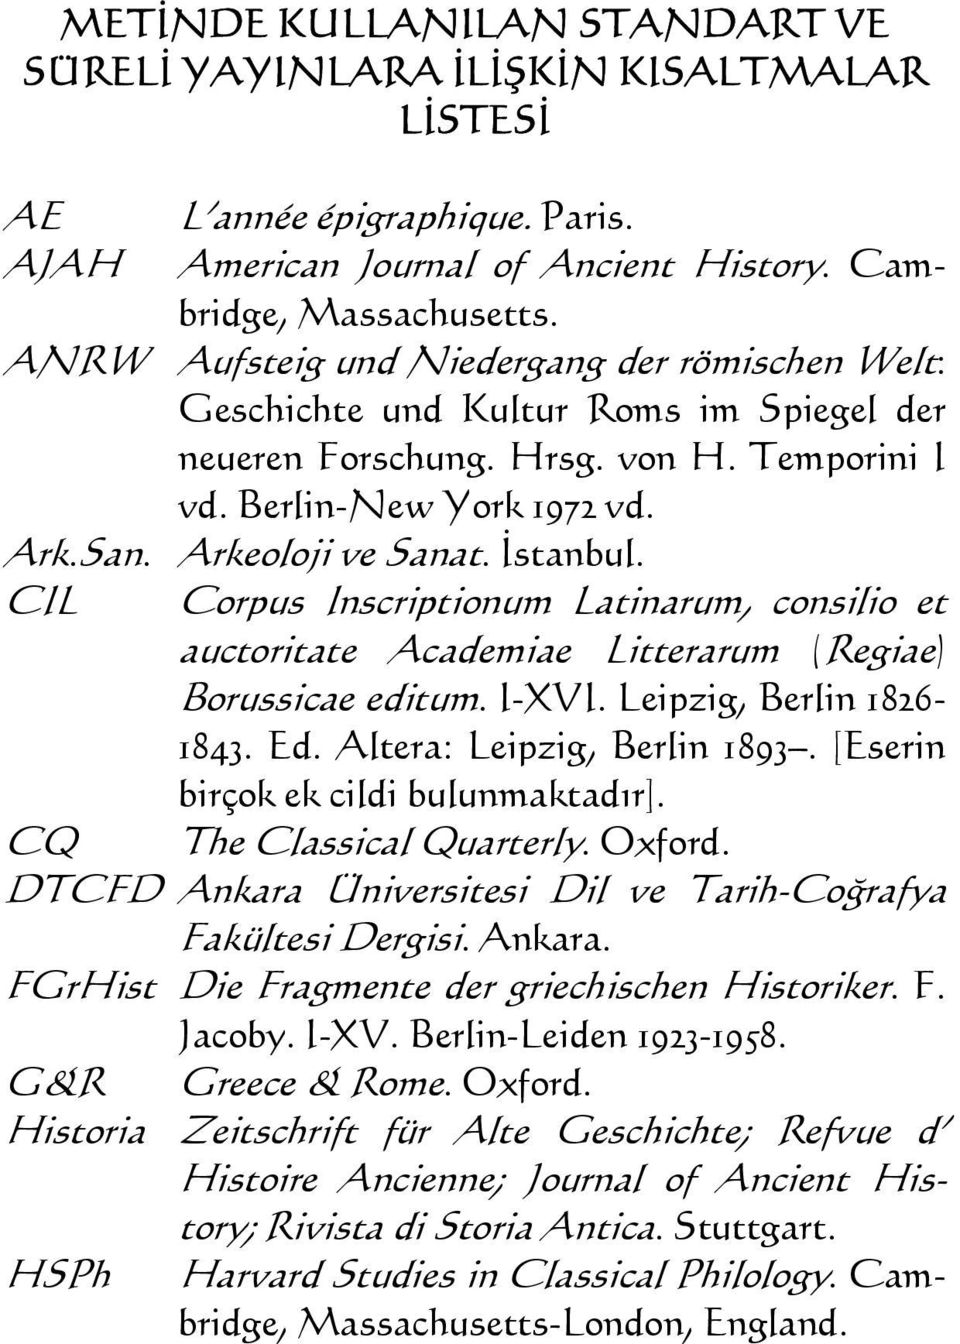 İstanbul. CIL Corpus Inscriptionum Latinarum, consilio et auctoritate Academiae Litterarum (Regiae) Borussicae editum. I-XVI. Leipzig, Berlin 1826-1843. Ed. Altera: Leipzig, Berlin 1893.